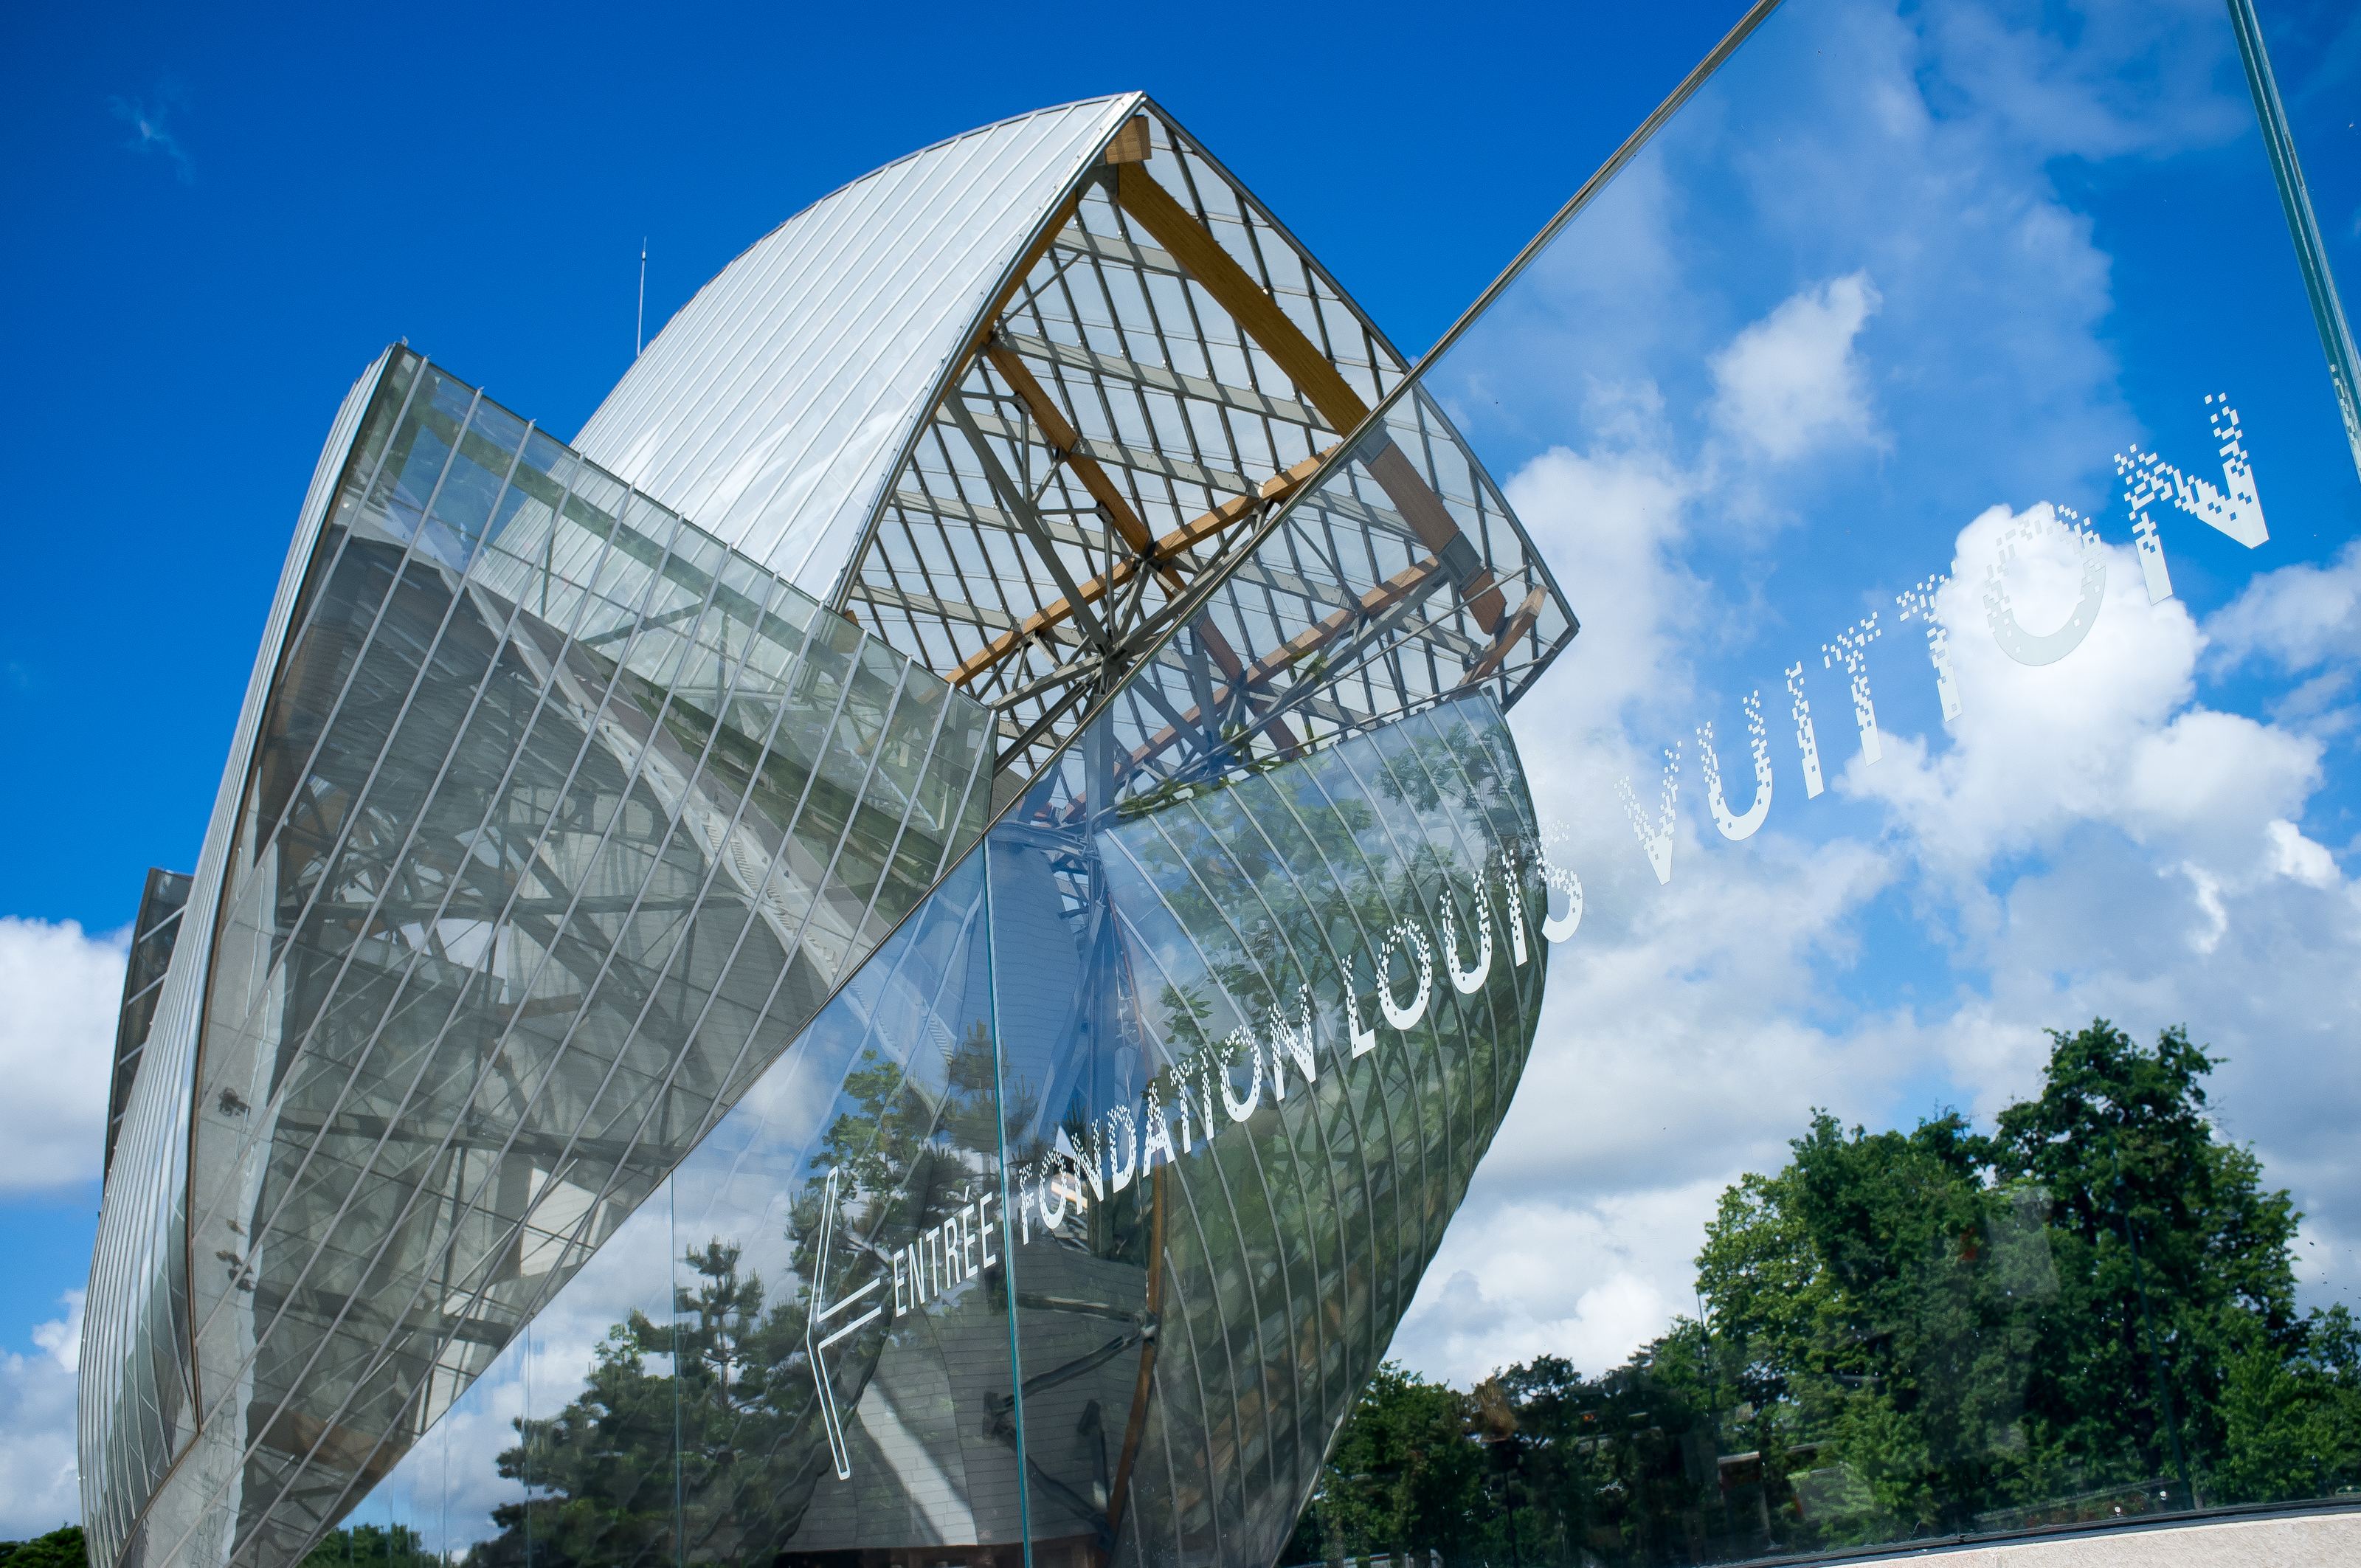 MoMA Launches Fondation Louis Vuitton Exhibition